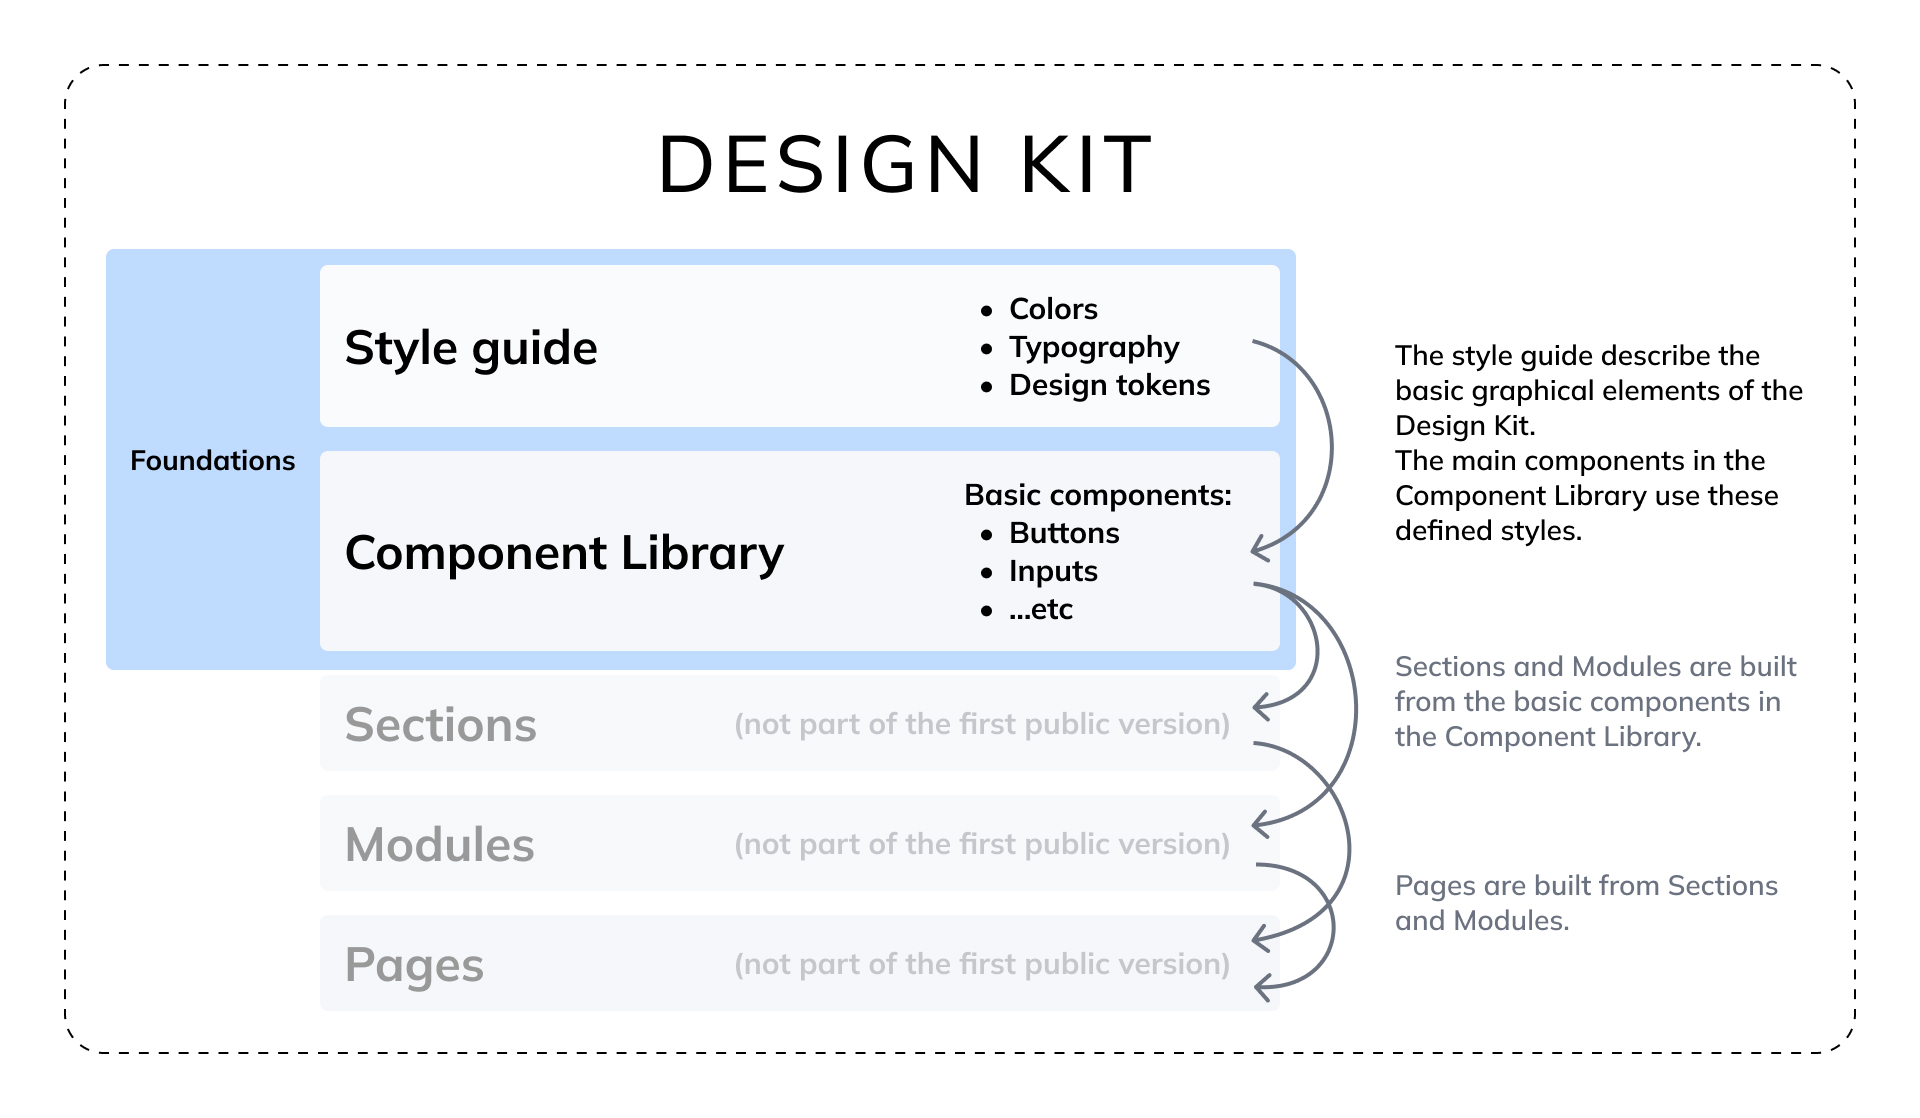 Graphic explaining the key elements of the DesignKit